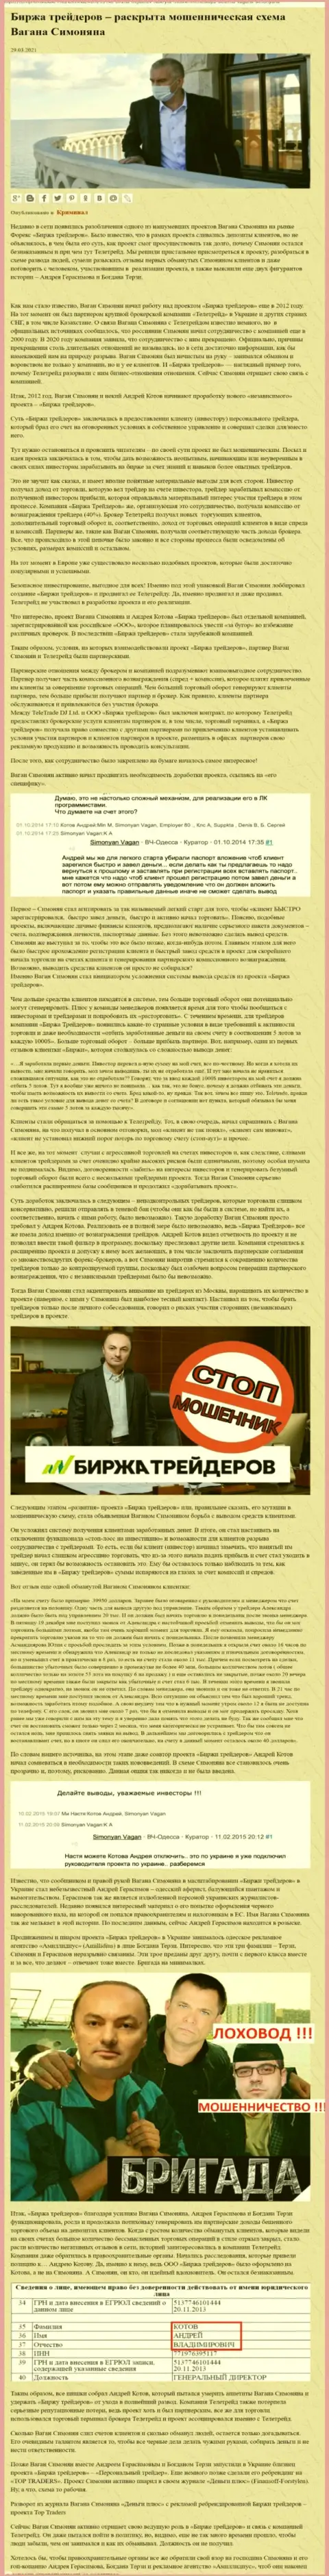 Рекламой компании B Traders, связанной с ворами ТелеТрейд, тоже был занят Терзи Богдан Михайлович